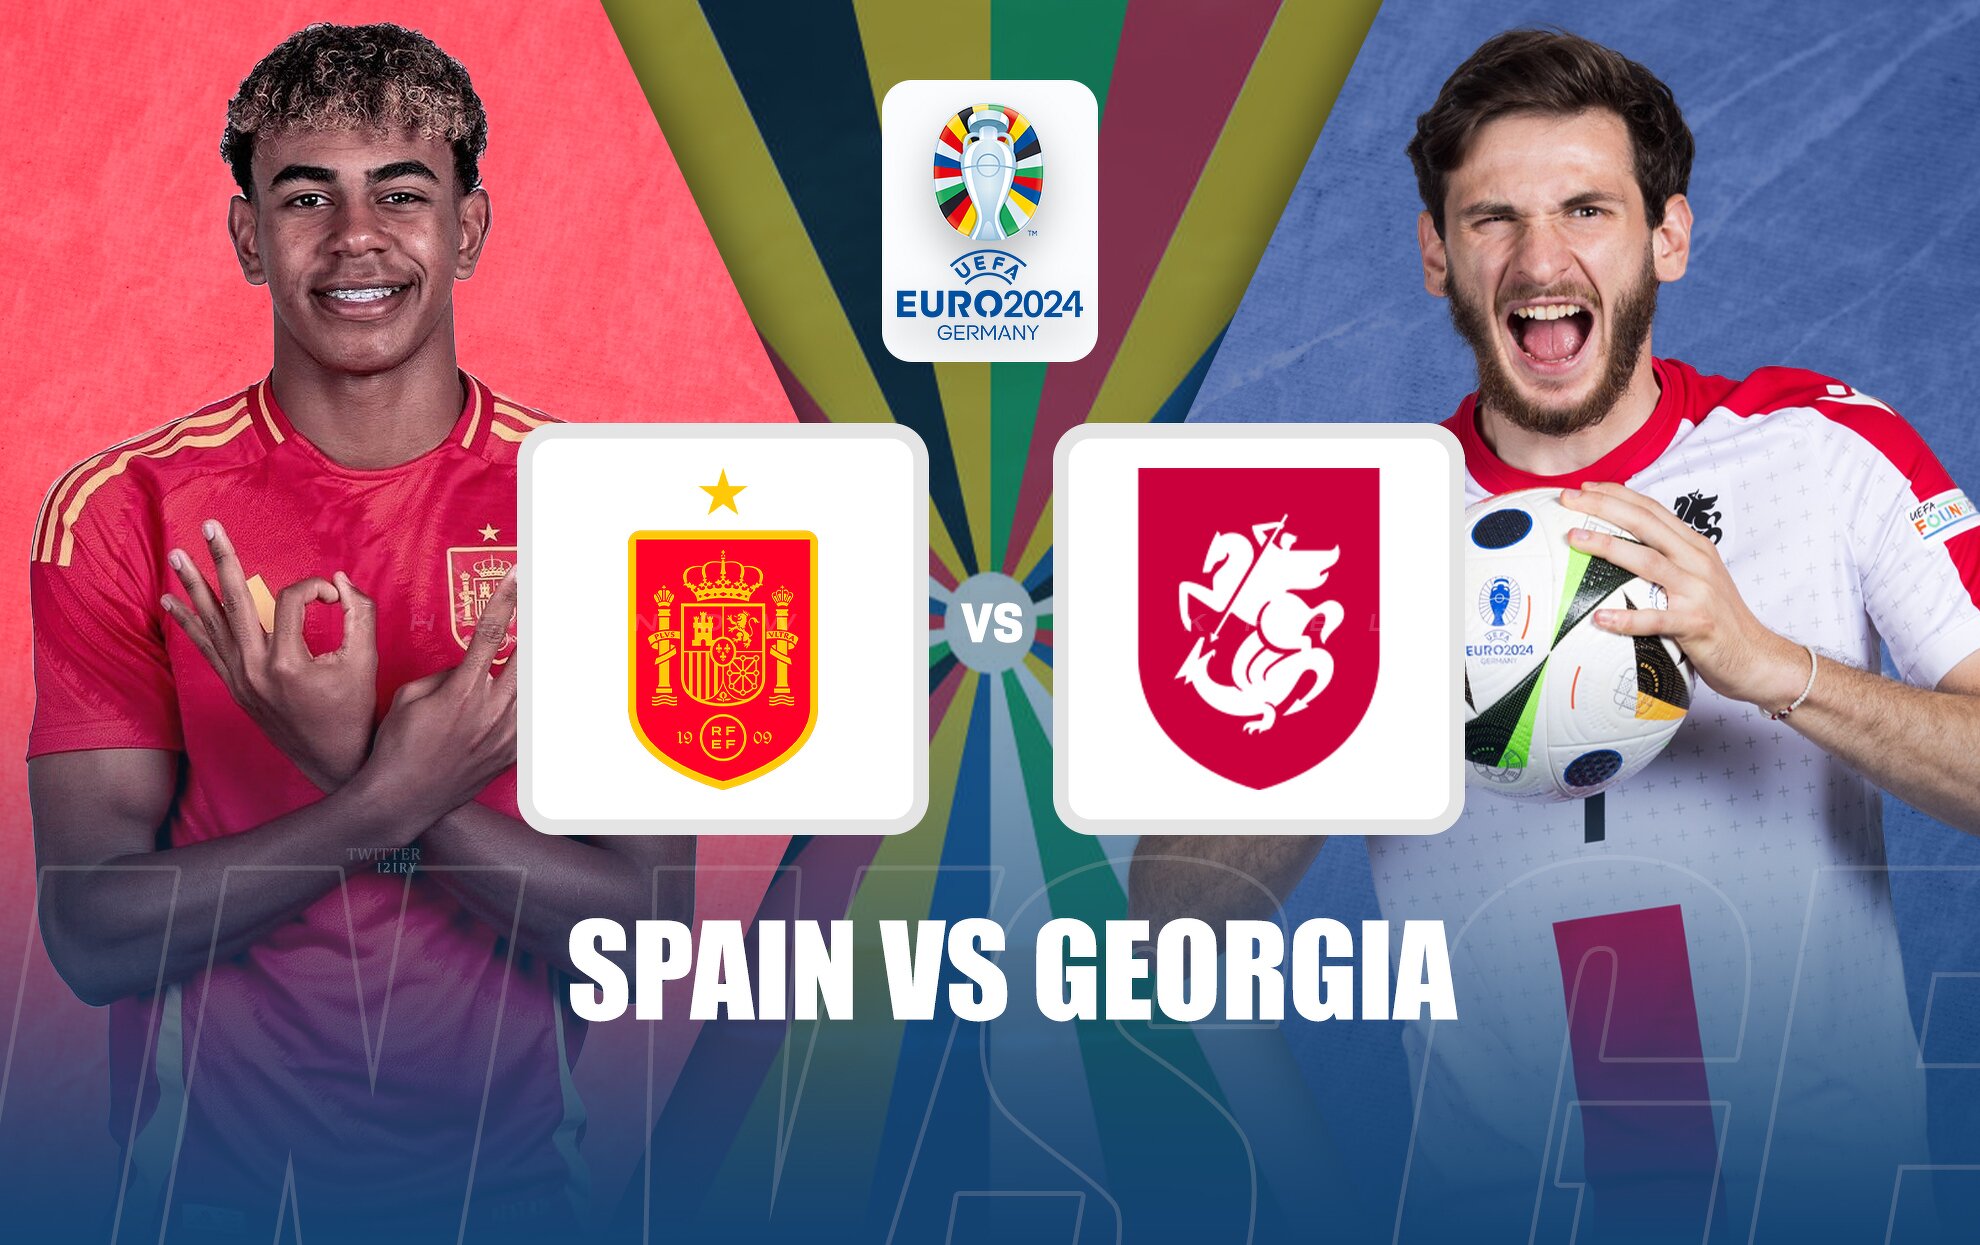 Spain vs georgia prediction